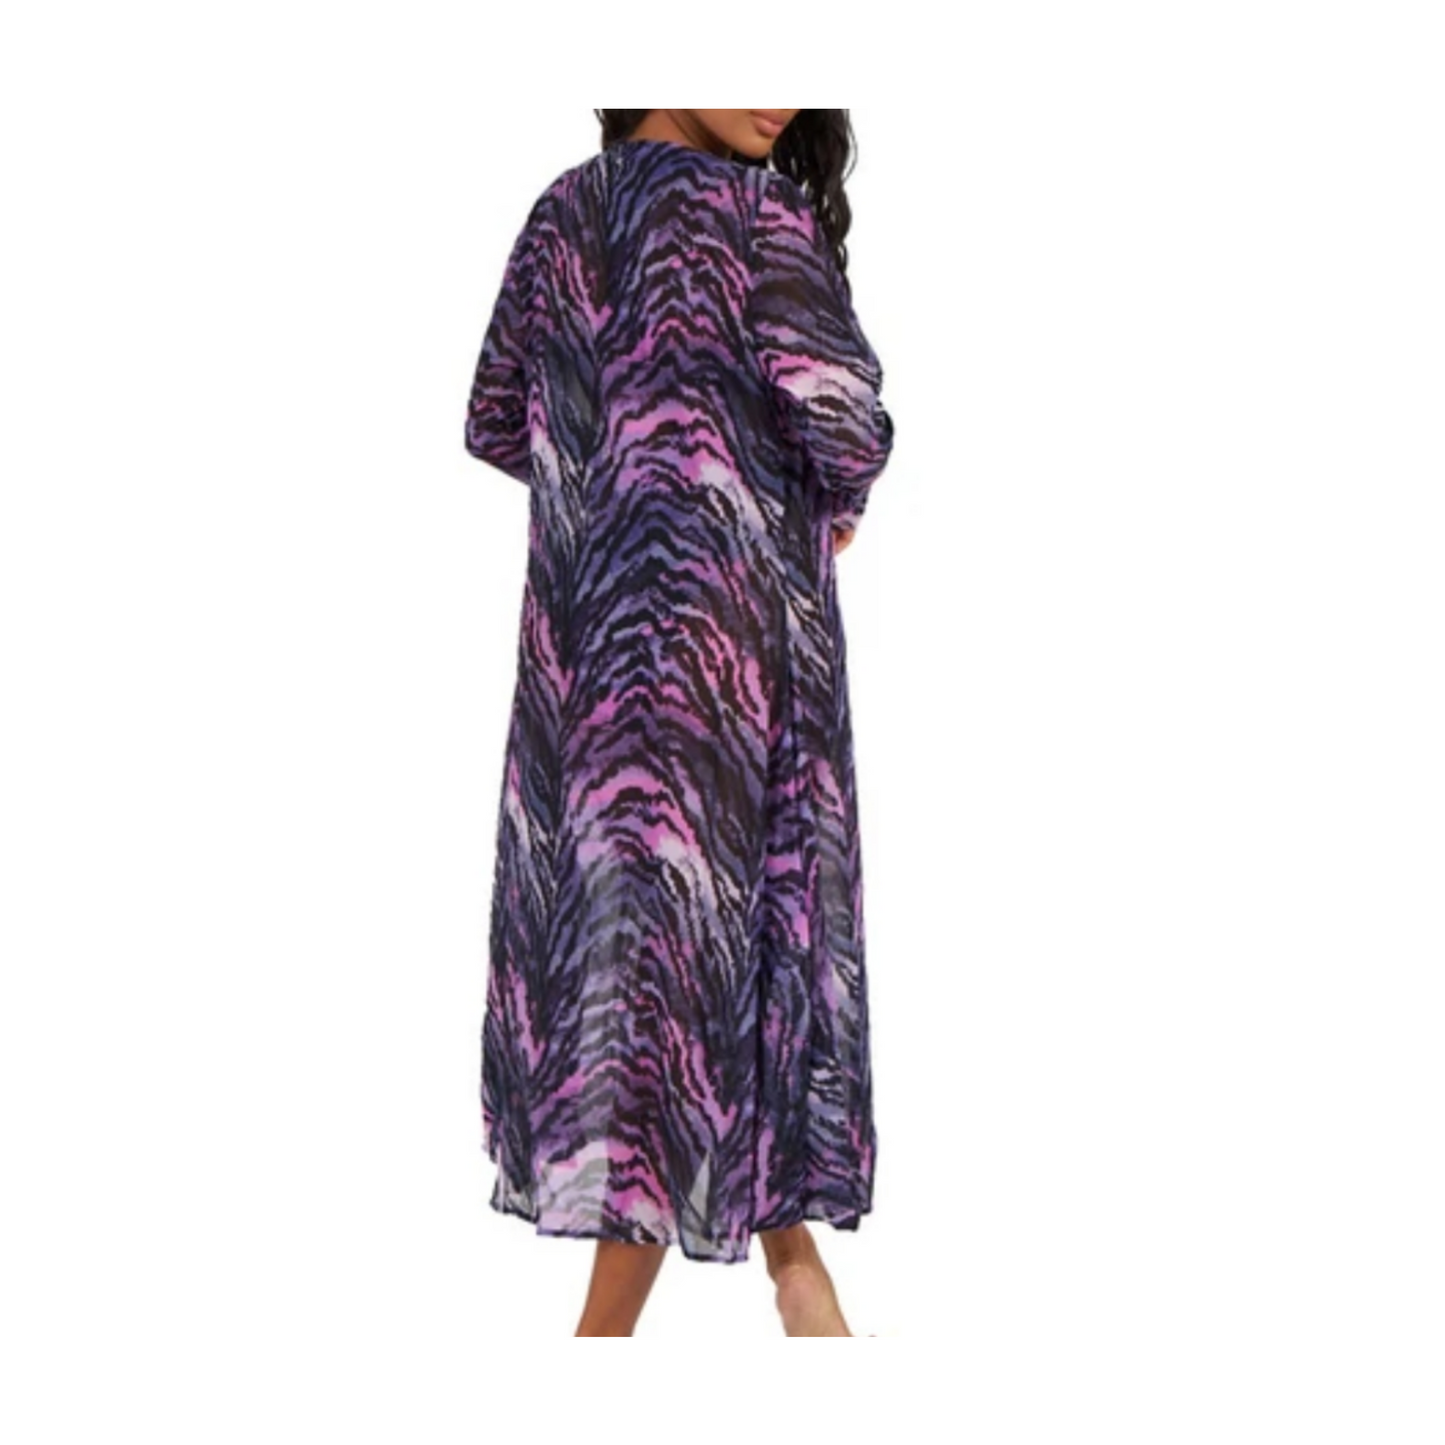 Zebra Kimono/Coverup (NEW)